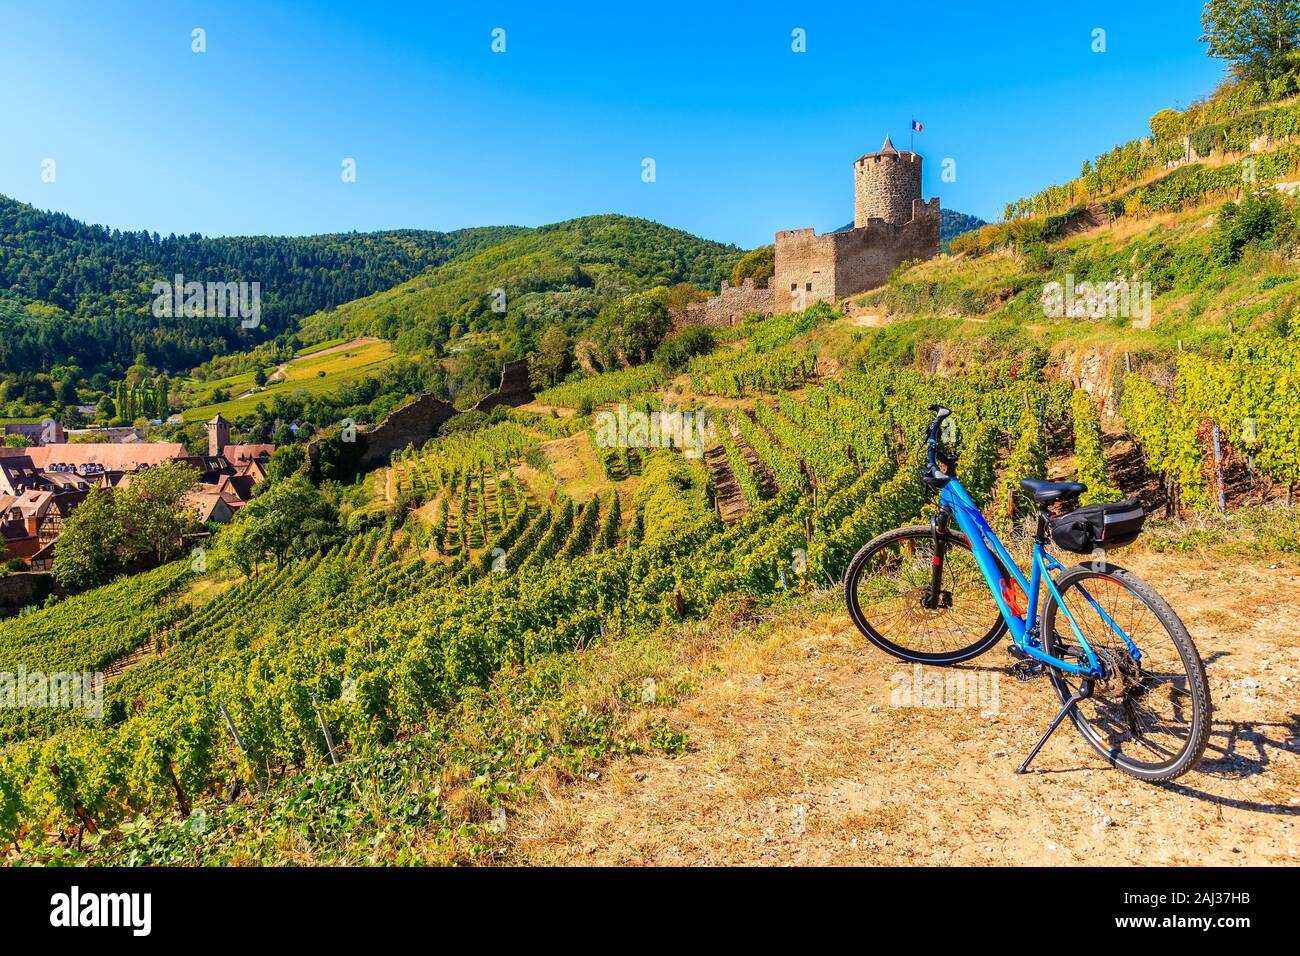 Bicicleta entre viñedos y vista de Kaysersberg castillo, la Ruta del Vino de Alsacia, Francia Foto de stock